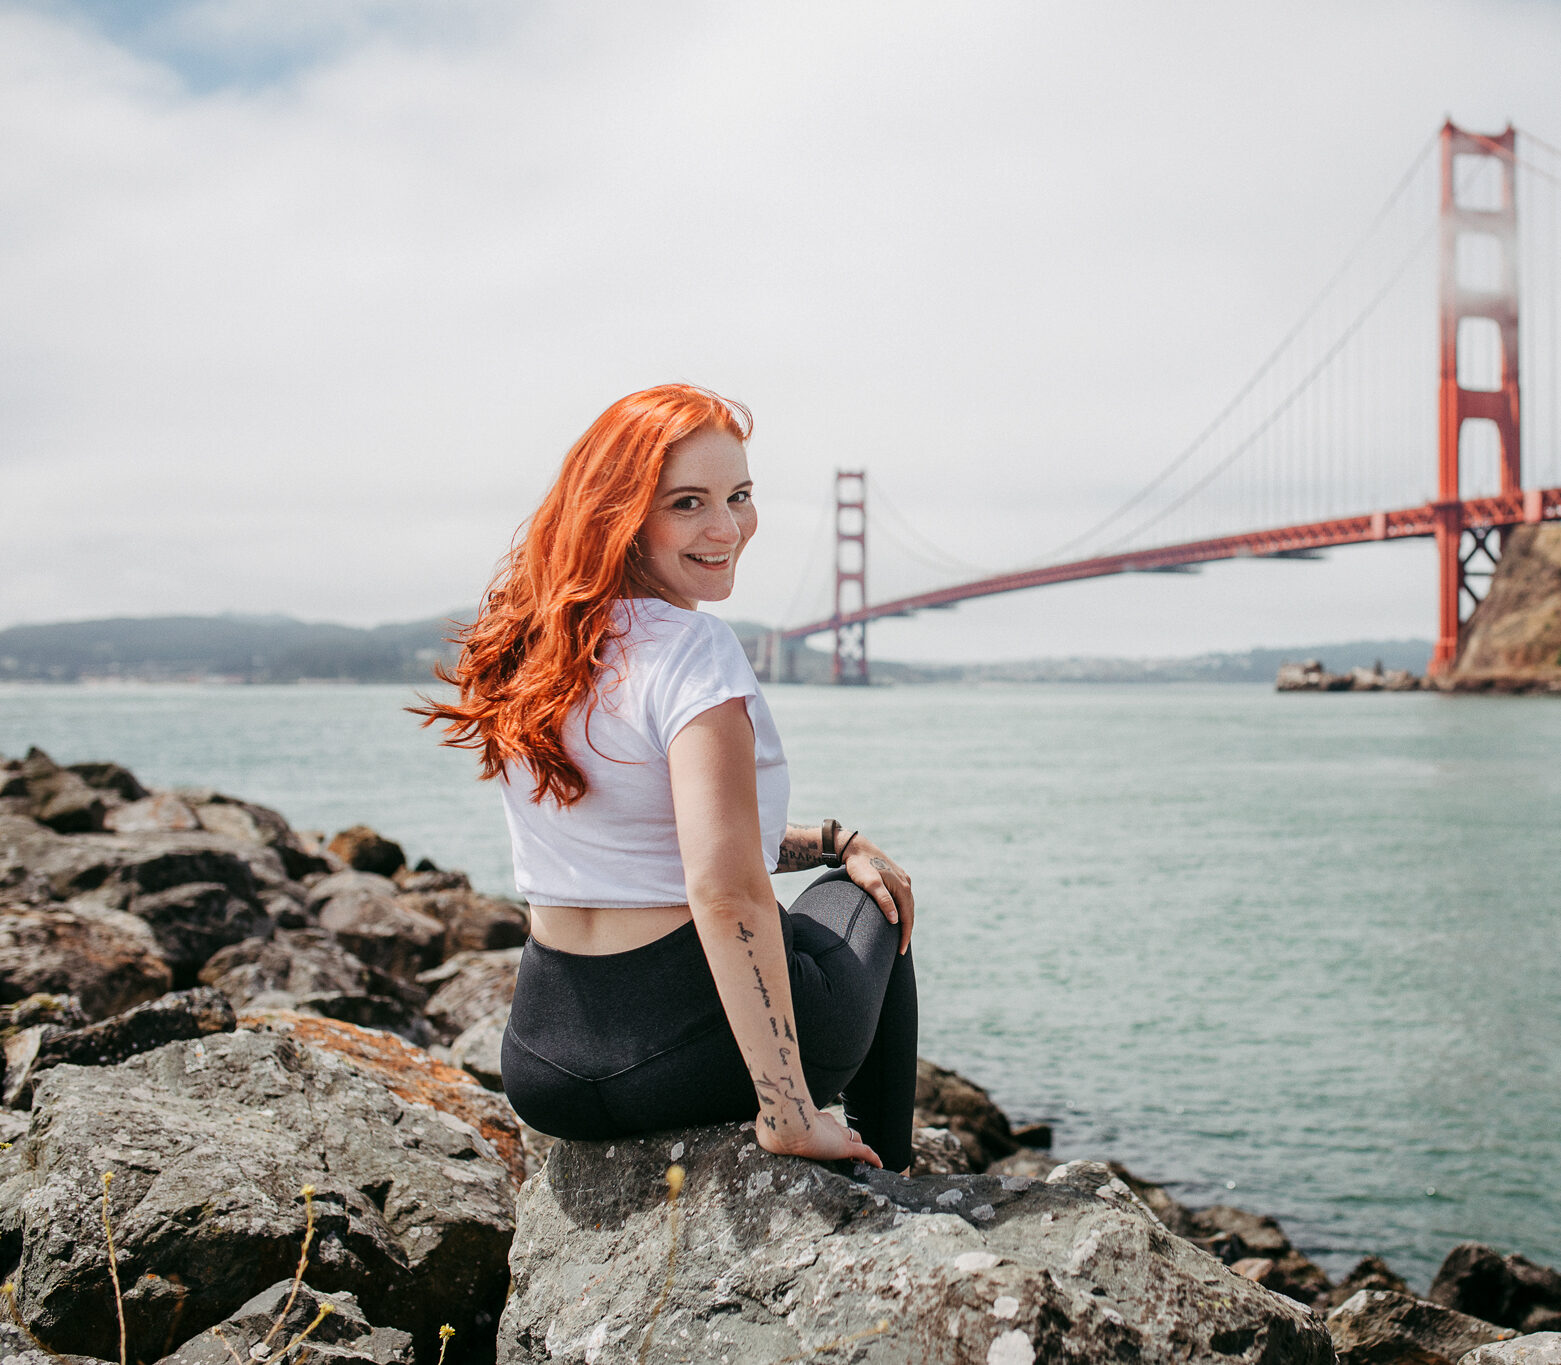 Kim Kärger auf Steinen sitzend vor der roten Brücke von San Francisco, USA.